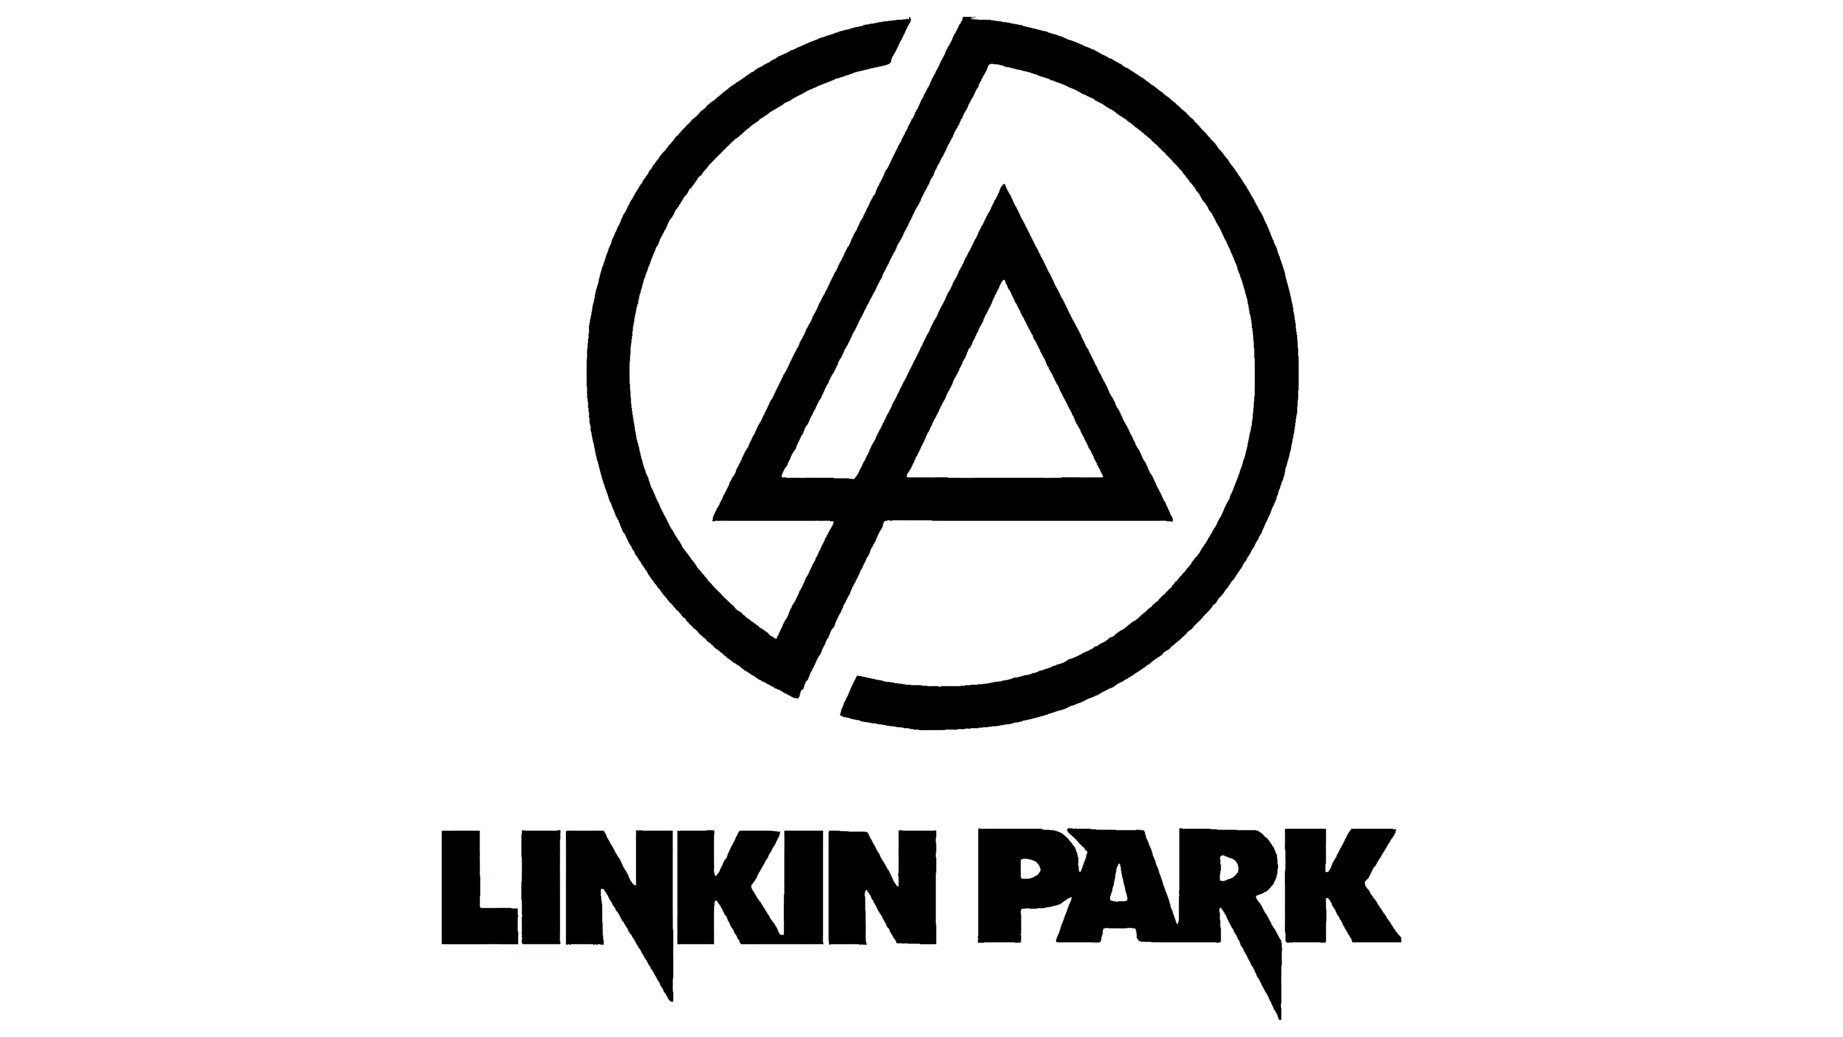 Linkin park symbol